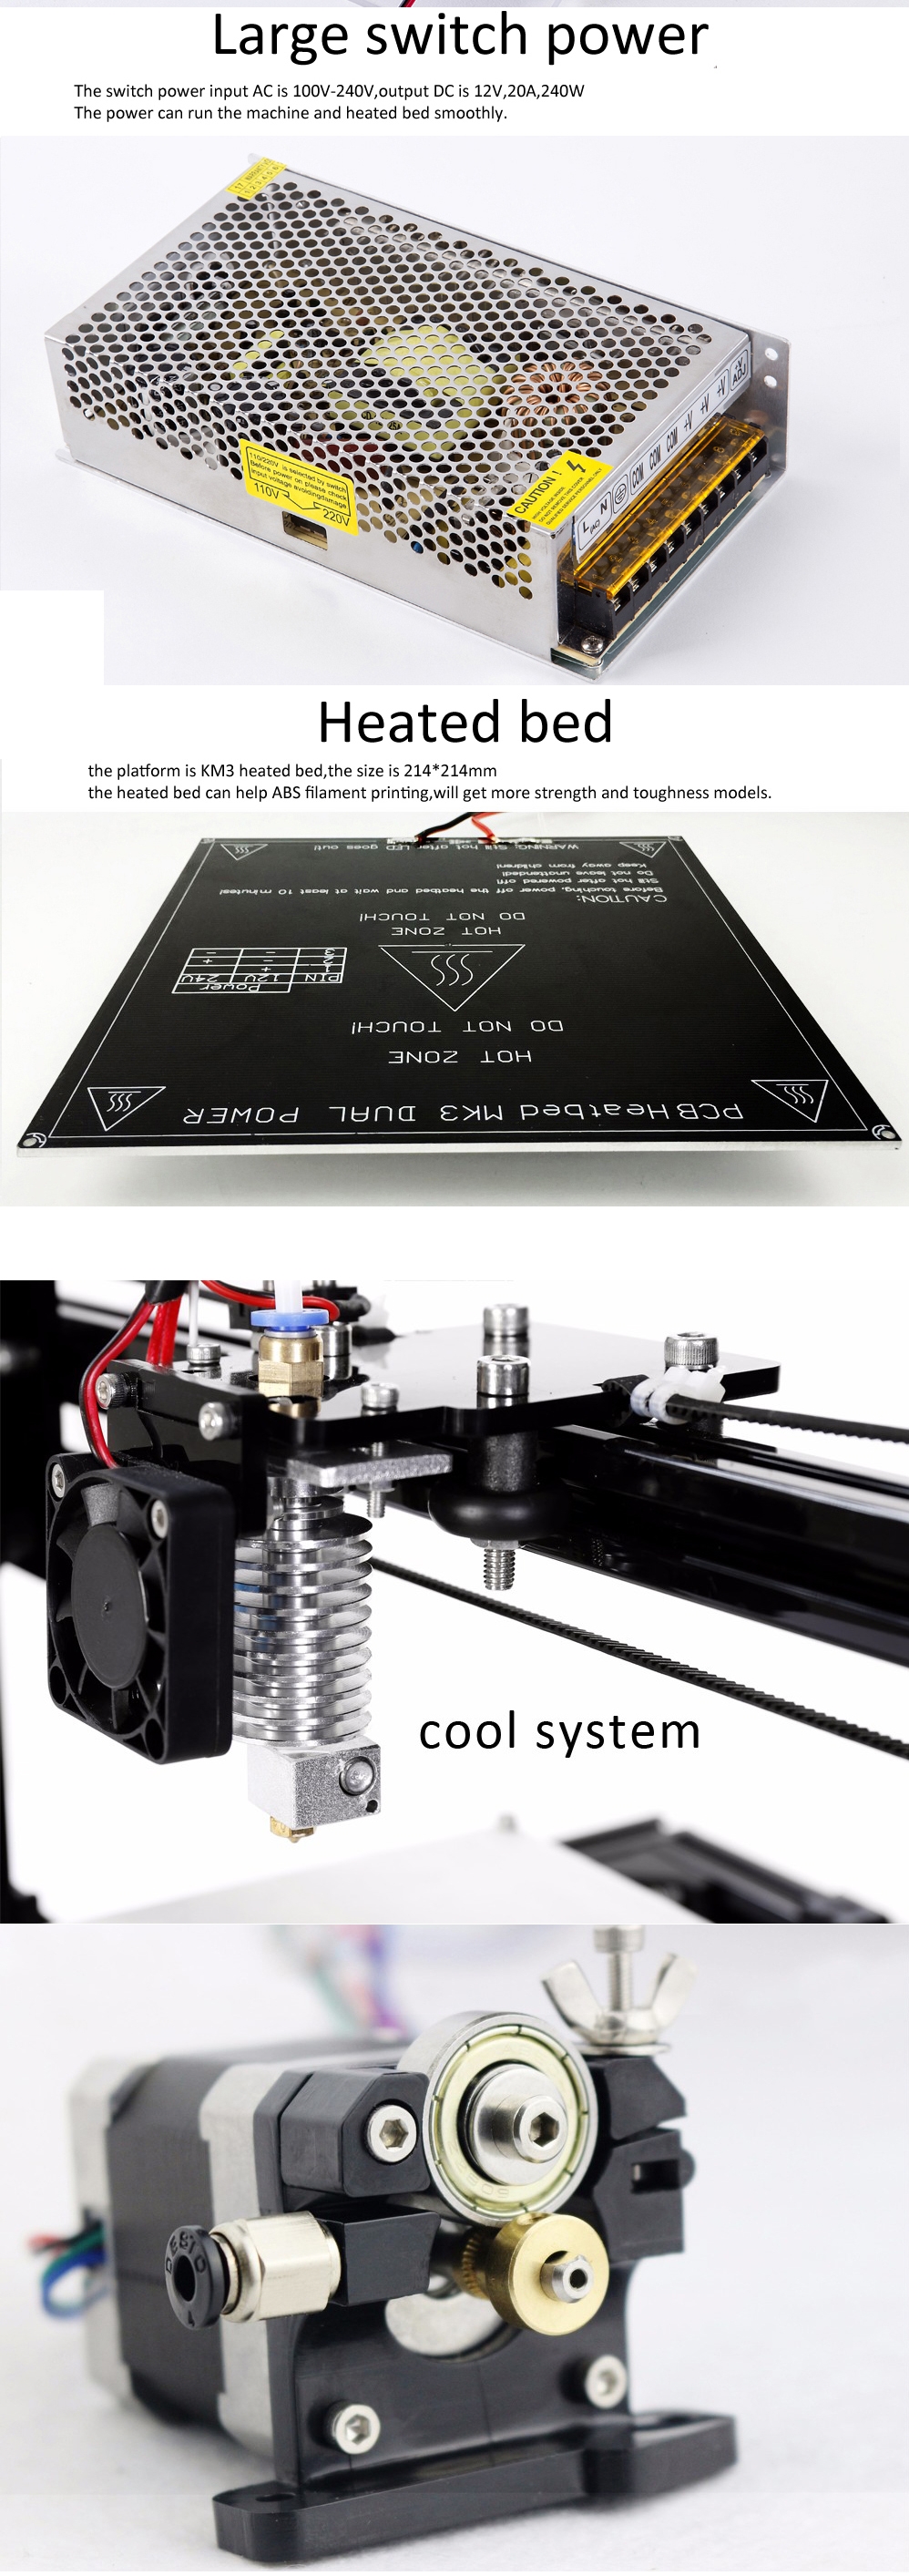 FLSUN® C Plus Desktop DIY 3D Printer With Touch Screen Dual Nozzle Auto Leveling Double Z-motors Support Flexible Filament 300*300*420mm Printing Size 9